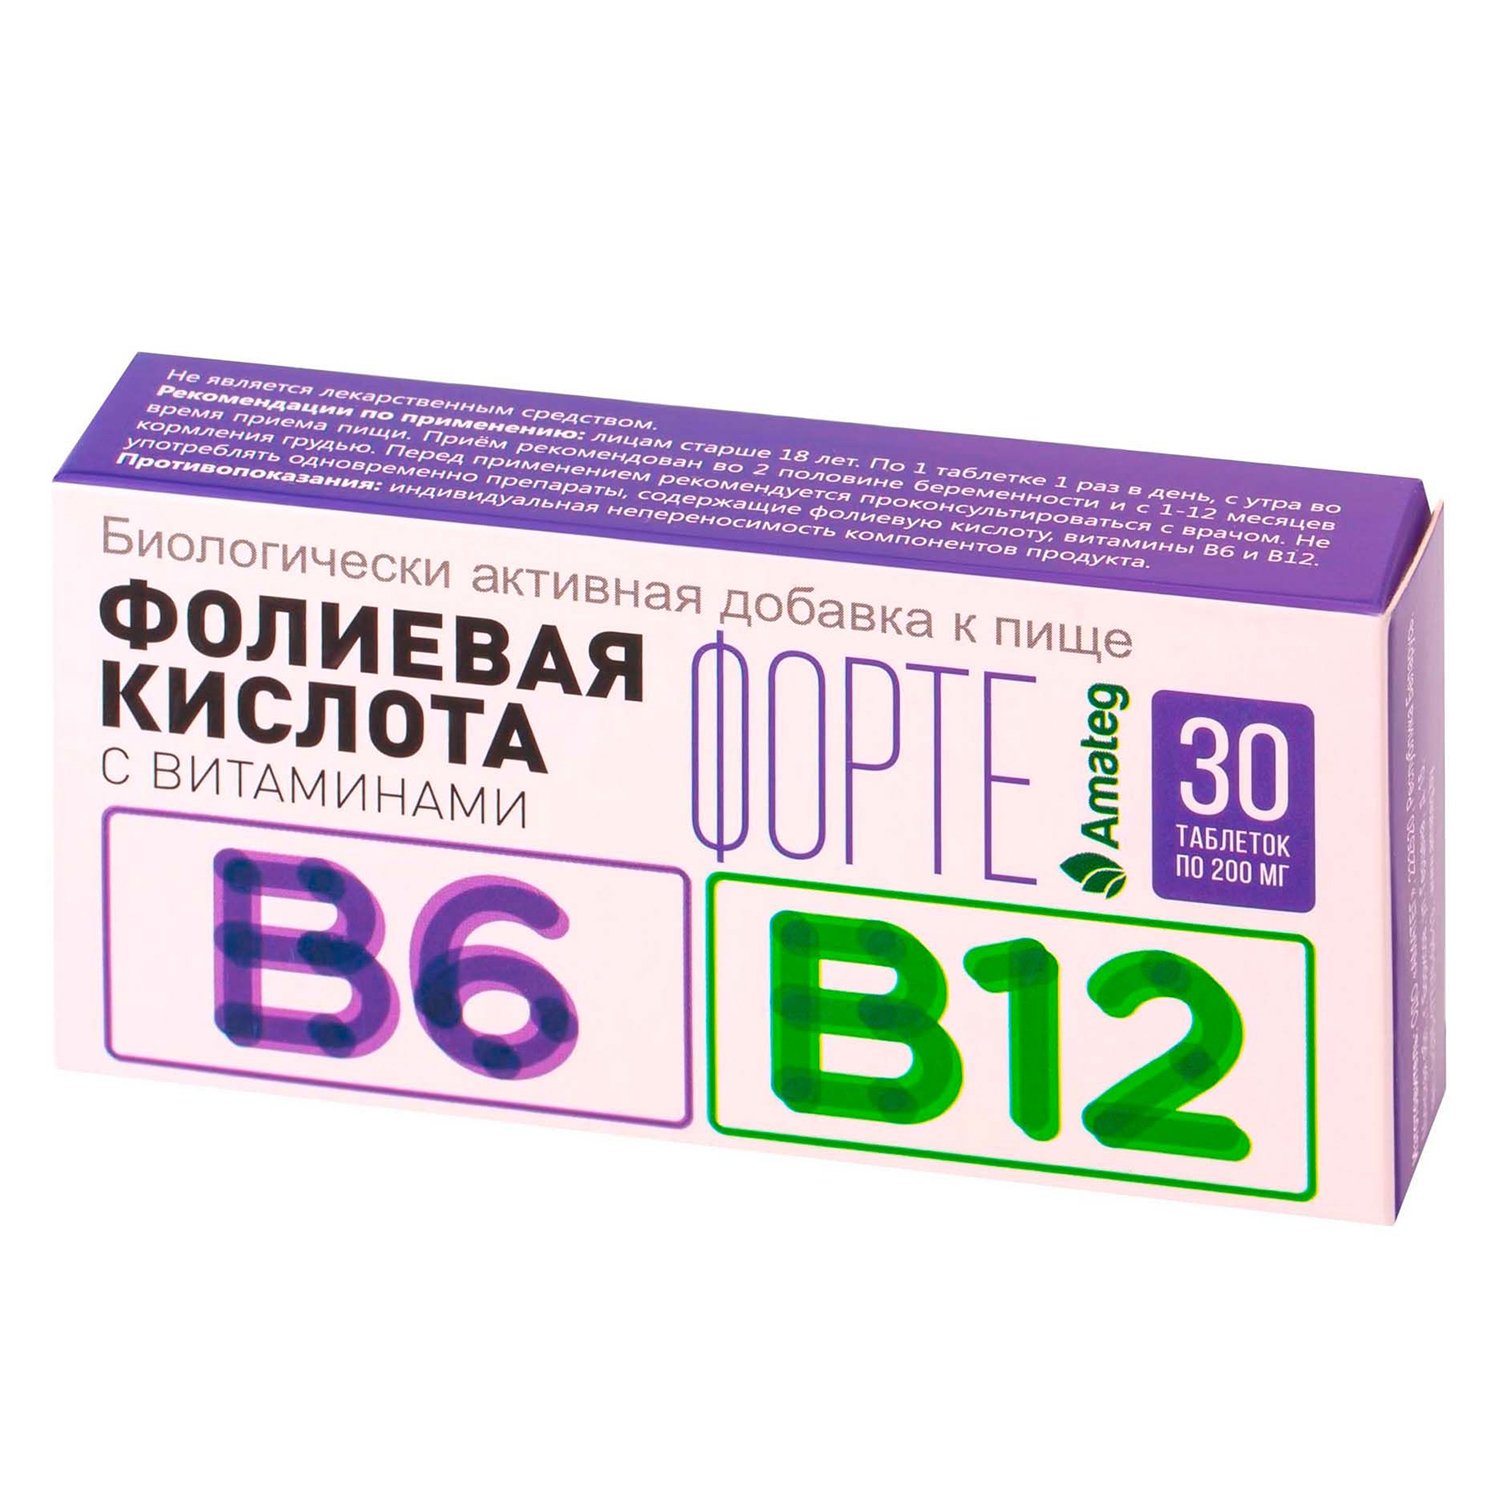 Витамин б12 в таблетках купить. Фолиевая кислота с витаминами в12 и в6. Витамин б12 и фолиевая кислота в таблетках. Таблетки витамин b12 фолиевая кислота. Фолиевая кислота с витаминами в12 и в6 таблетки.